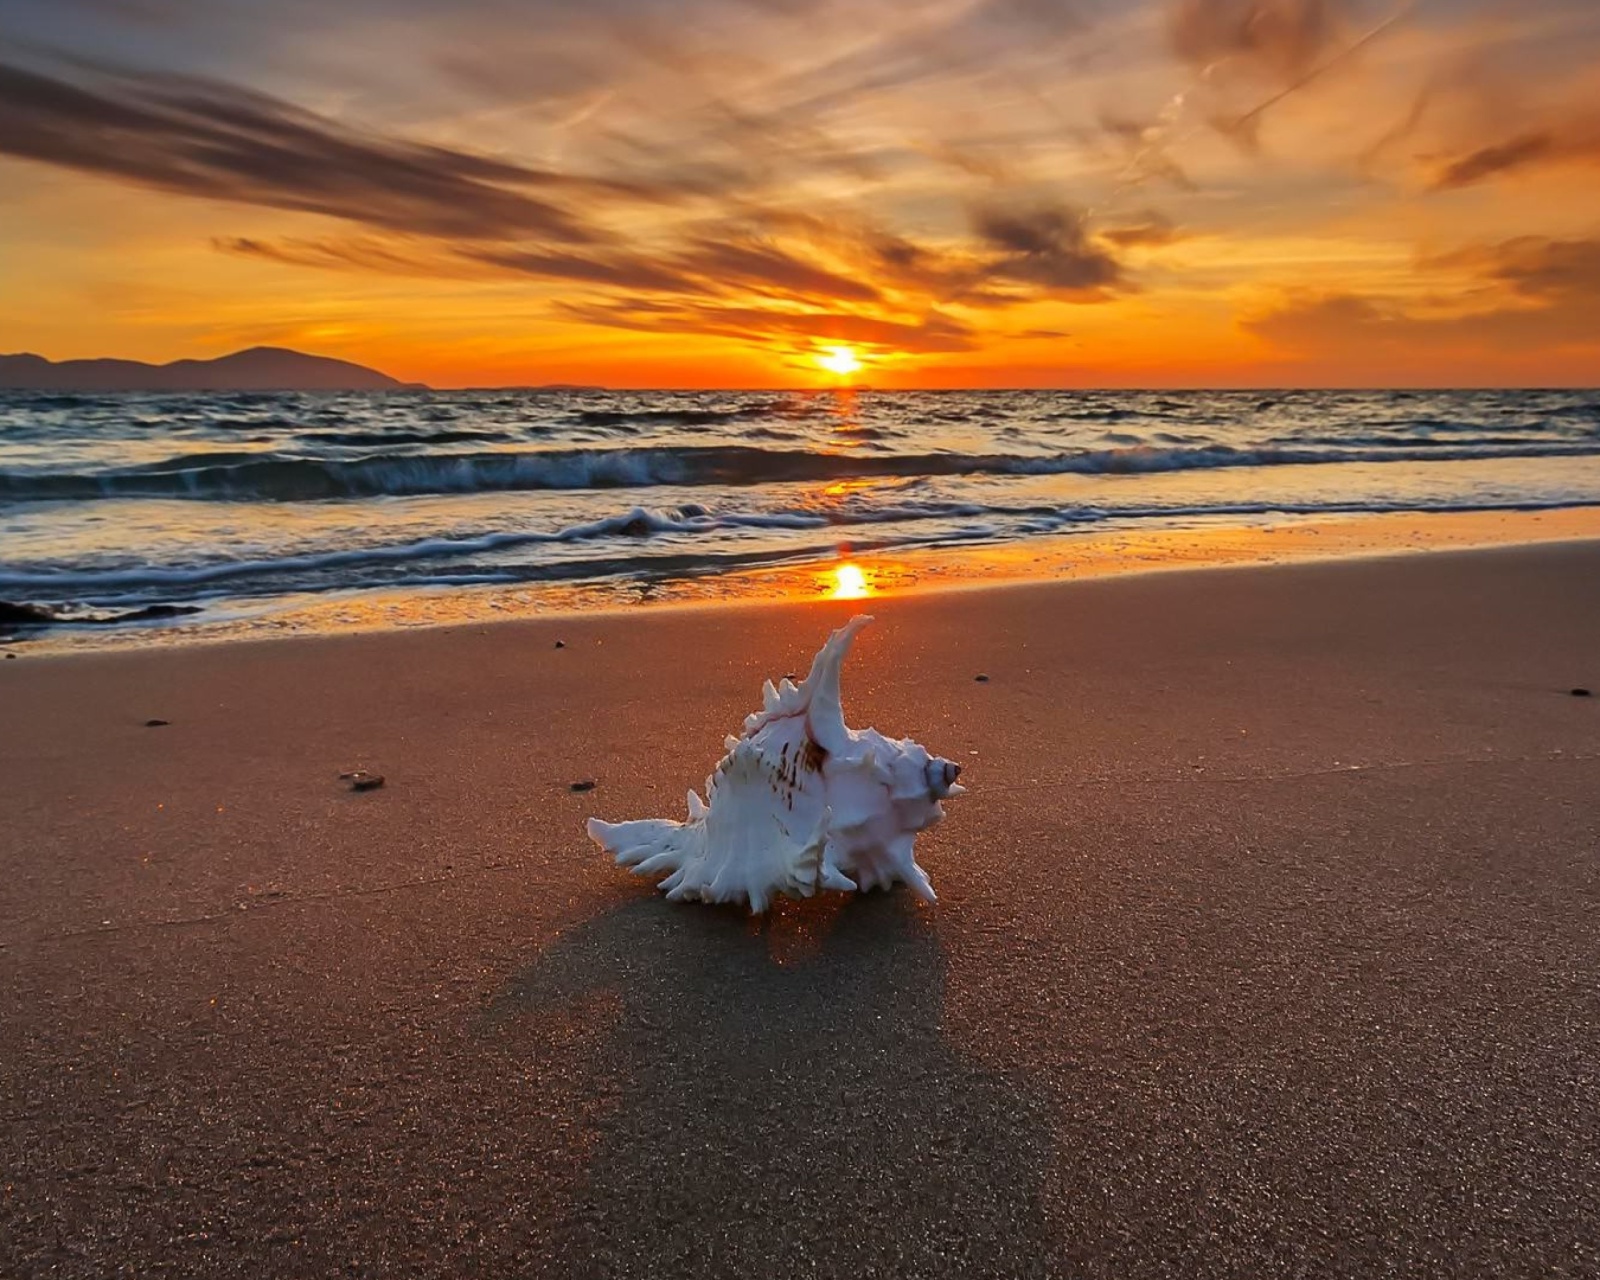 Обои Sunset on Beach with Shell 1600x1280